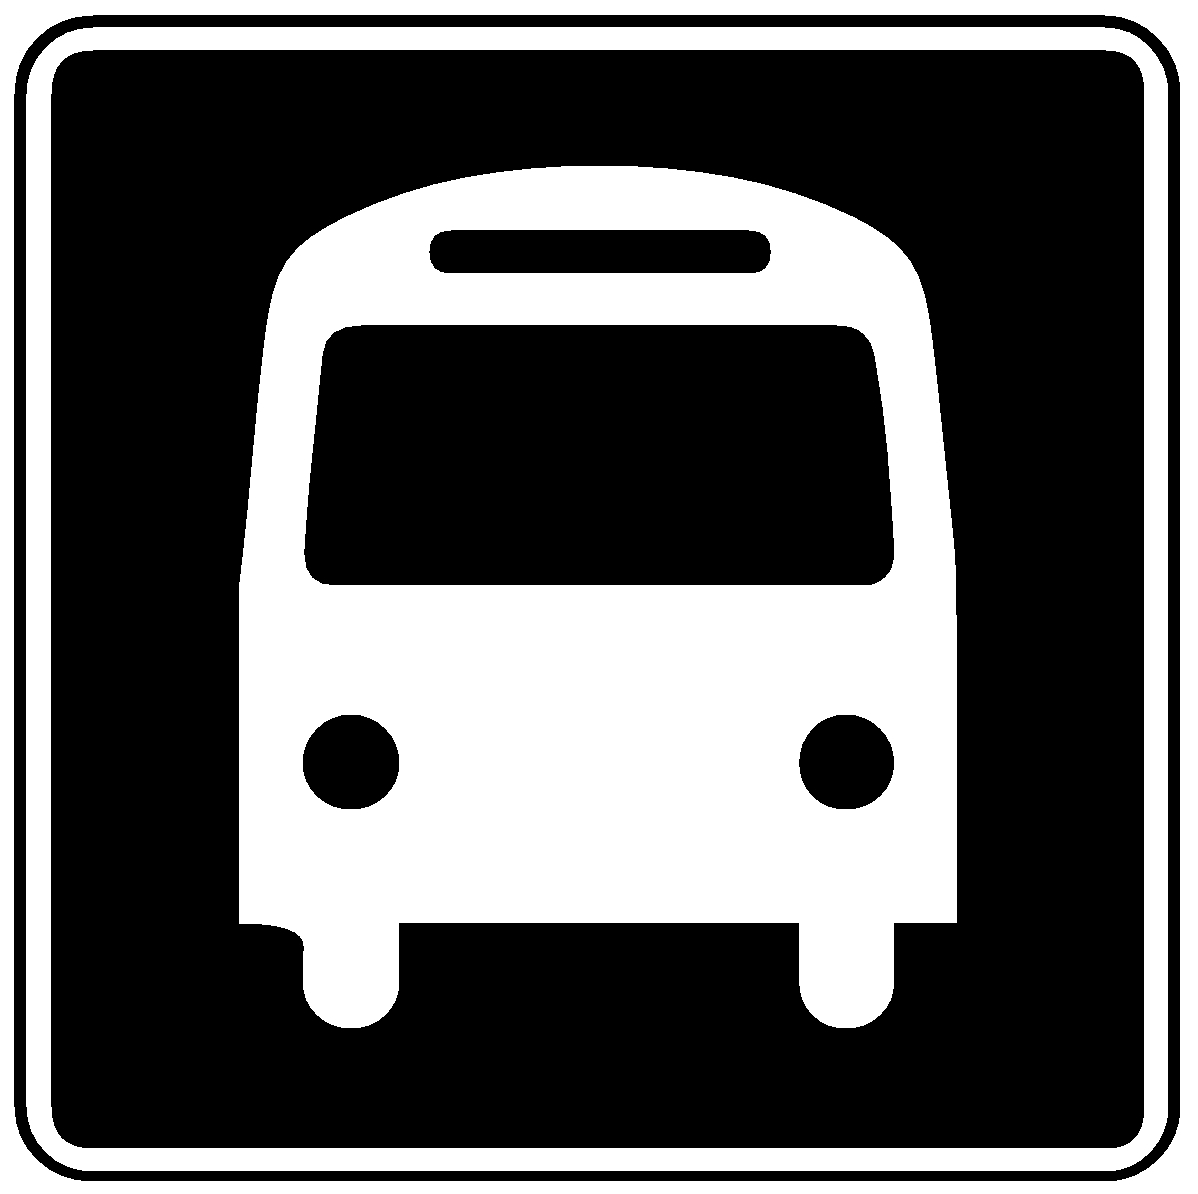 metro bus schedule